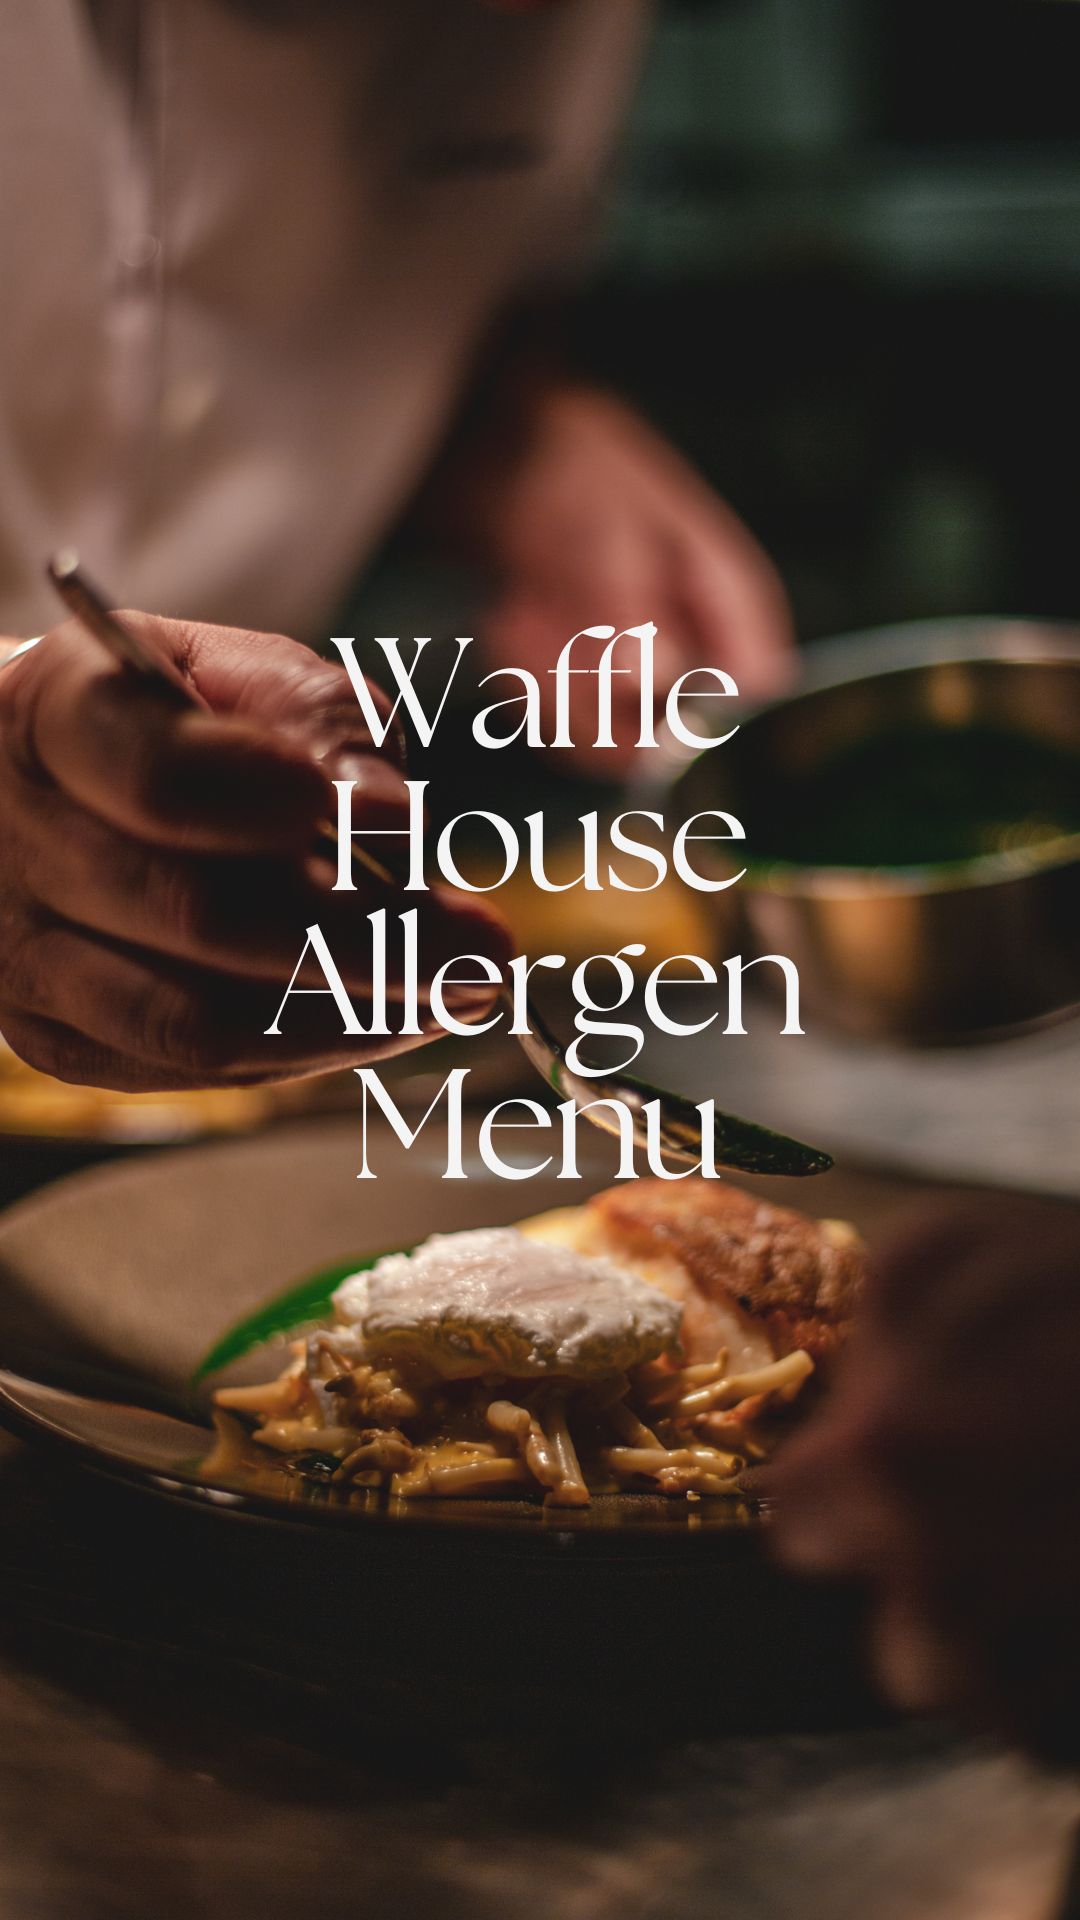 waffle house allergen menu